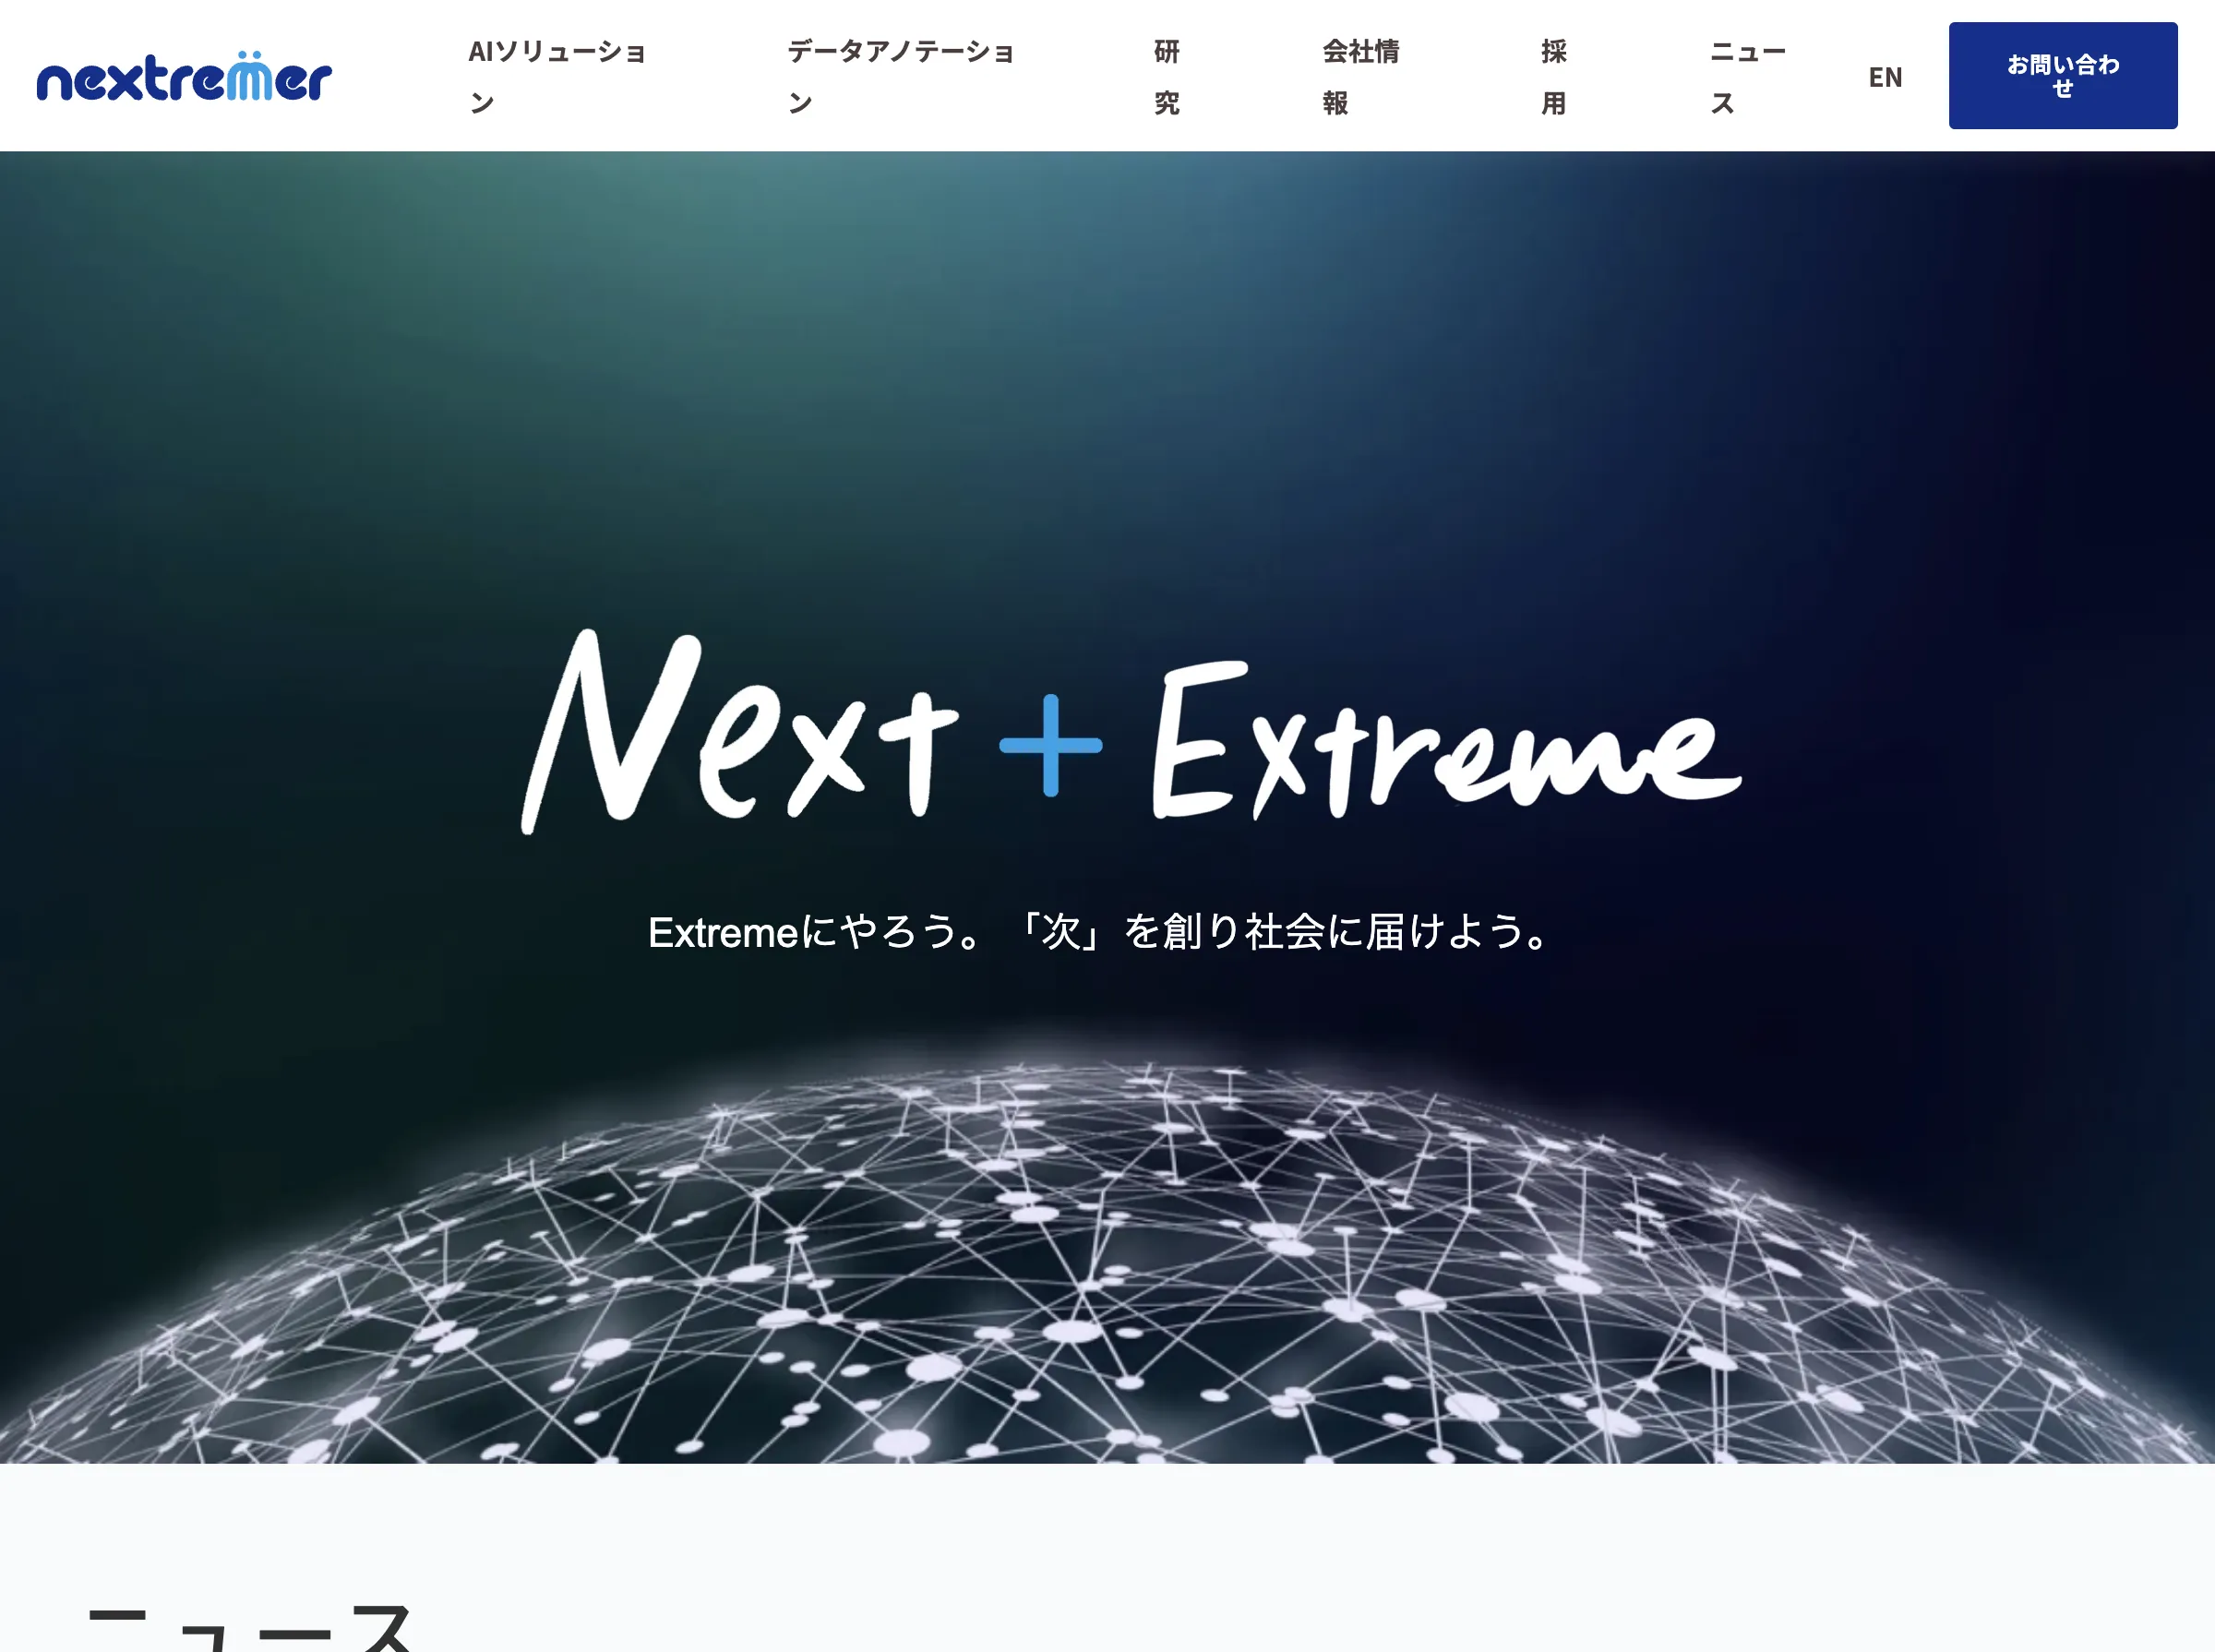 株式会社Nextremer_image